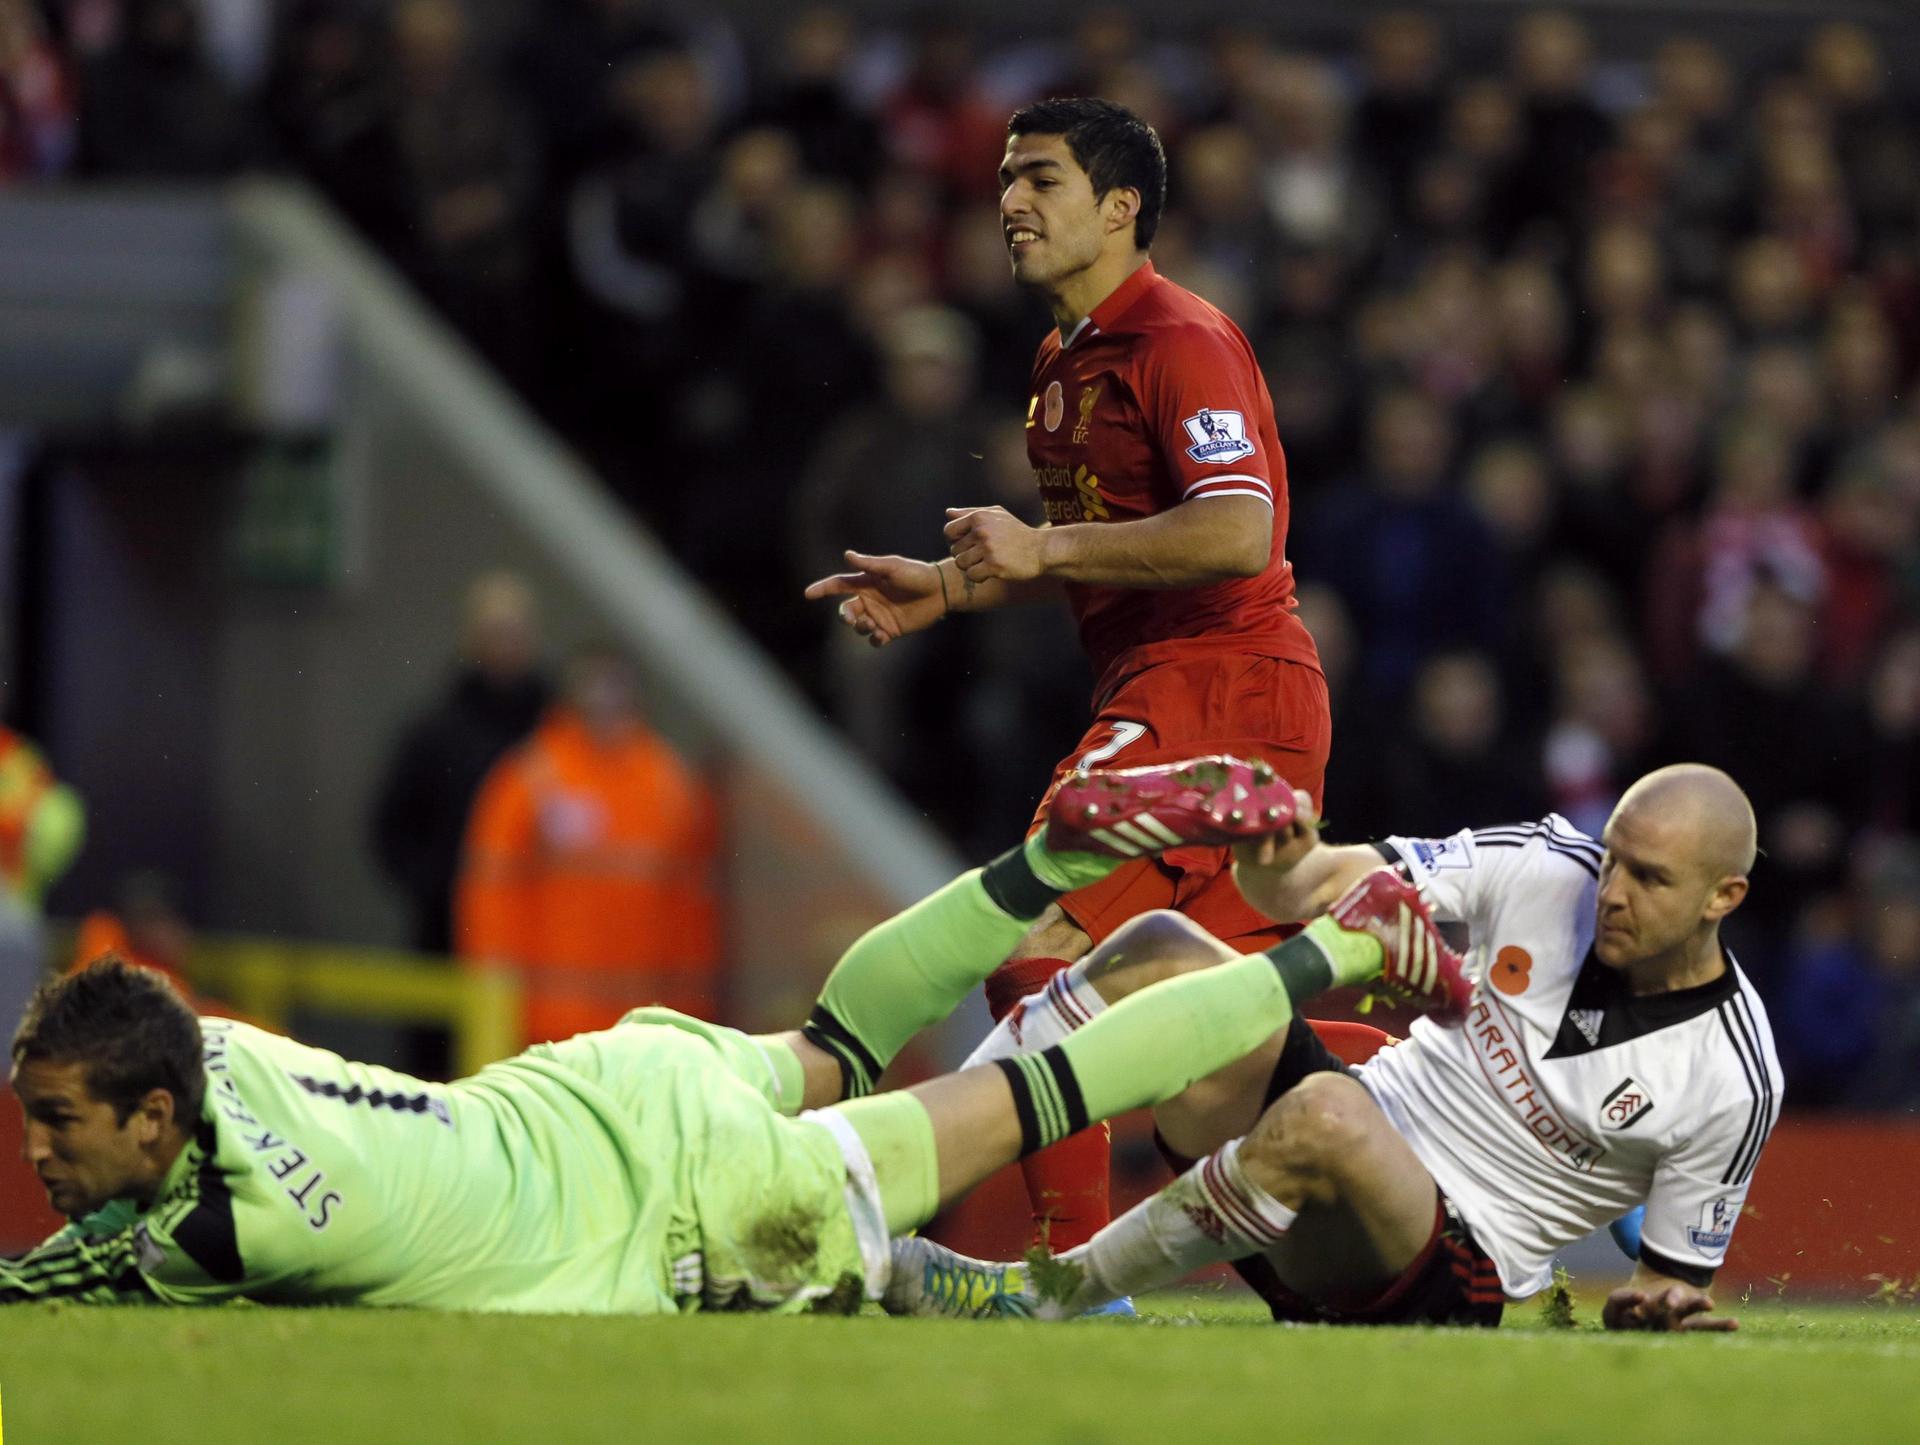 Liverpool's Luis Suarez scores against Fulham. Photo: Reuters